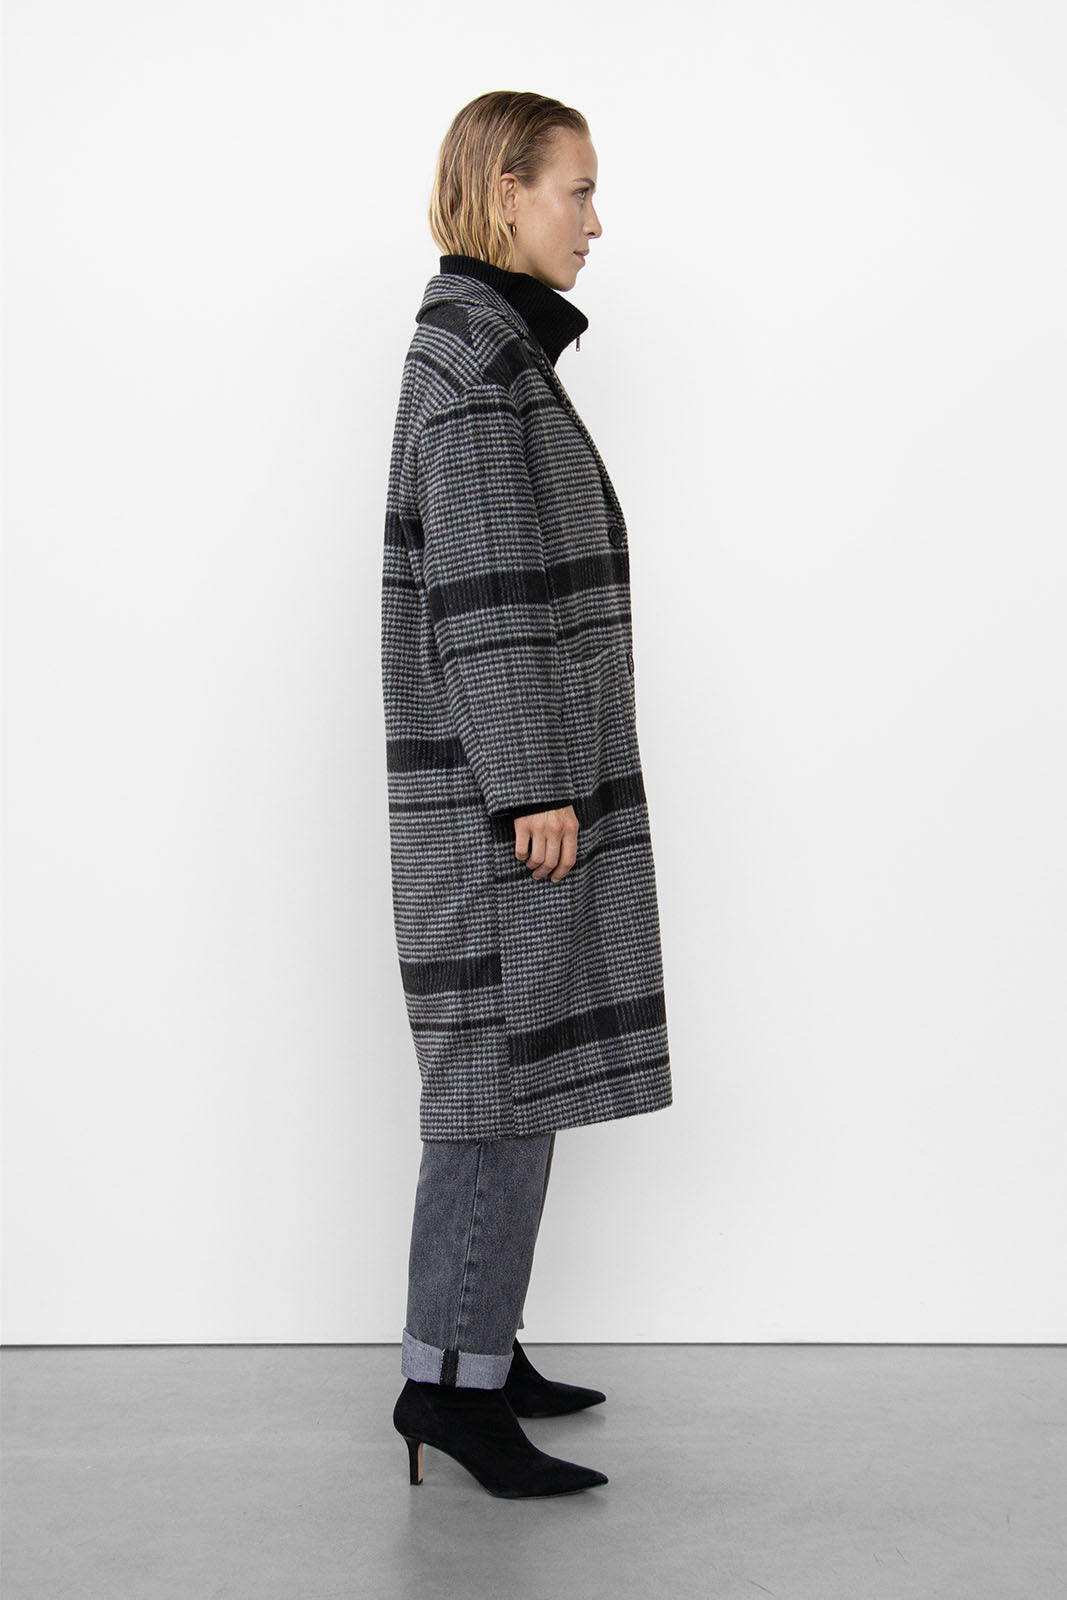 Wblalina Tailored Wool Coat